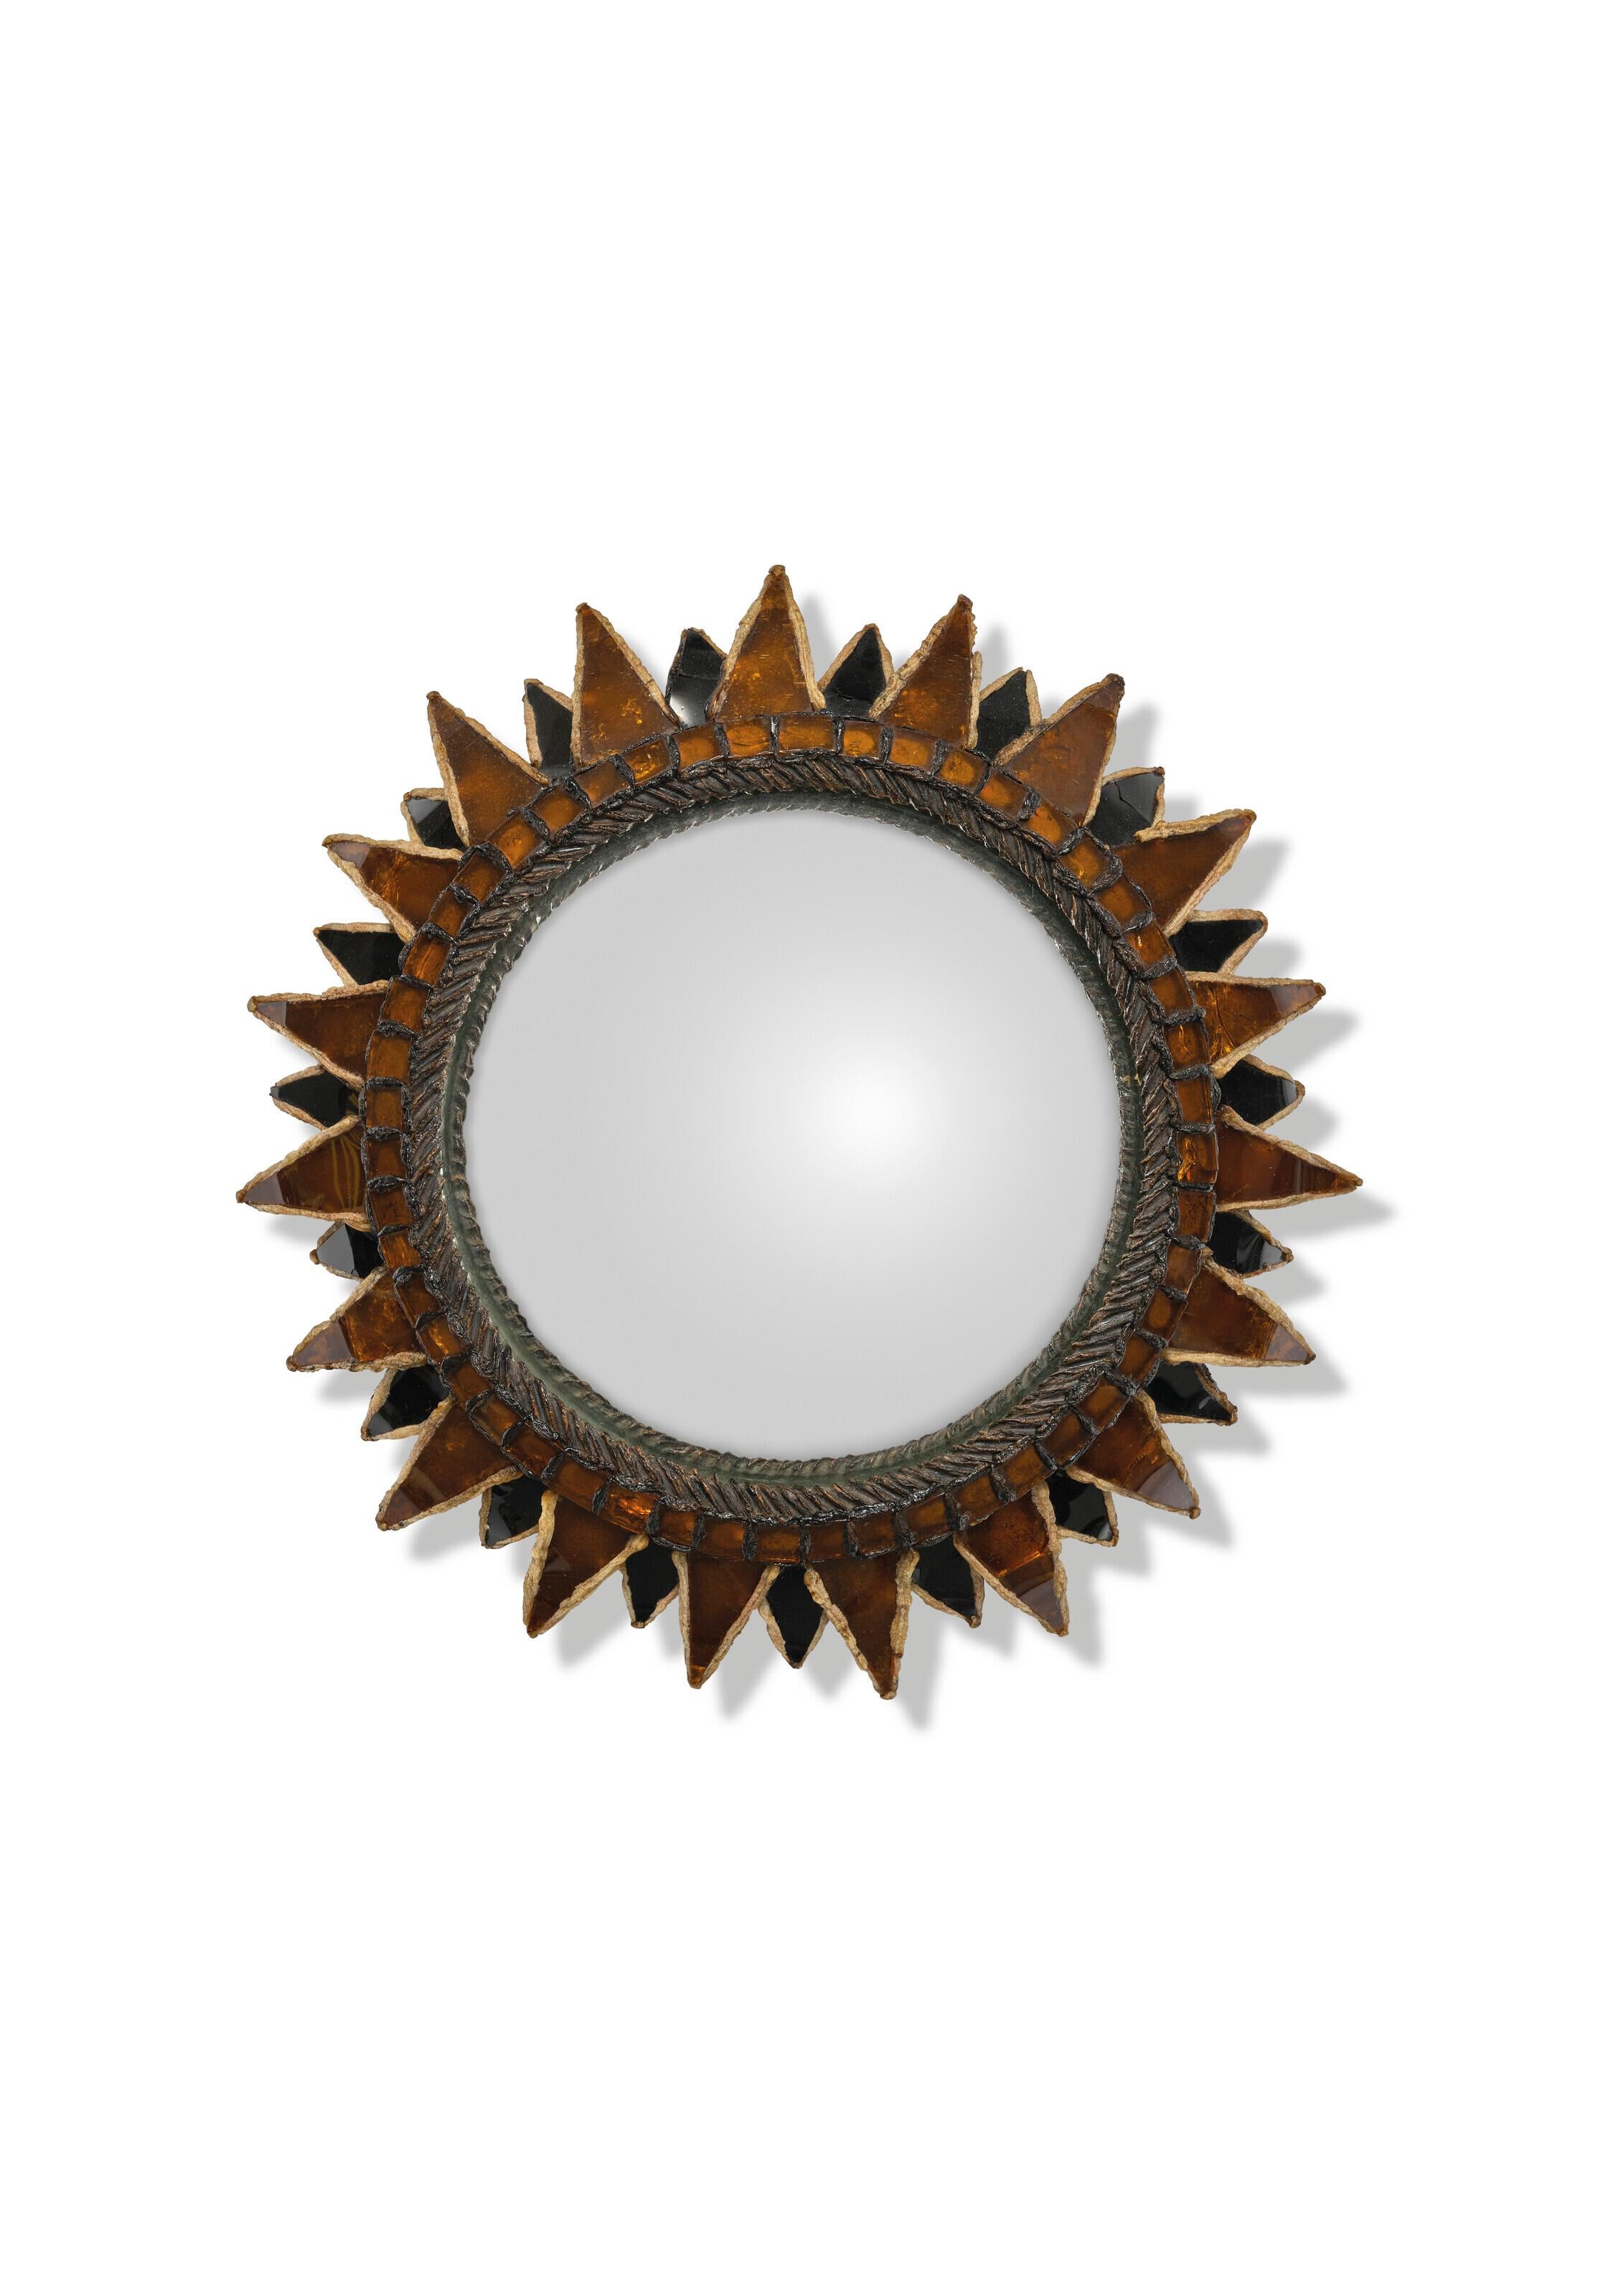 miroir 'Soleil à pointes n. 2' de Line Vautrin
Talosel, incrustations de miroir et miroir sorcière
1960.